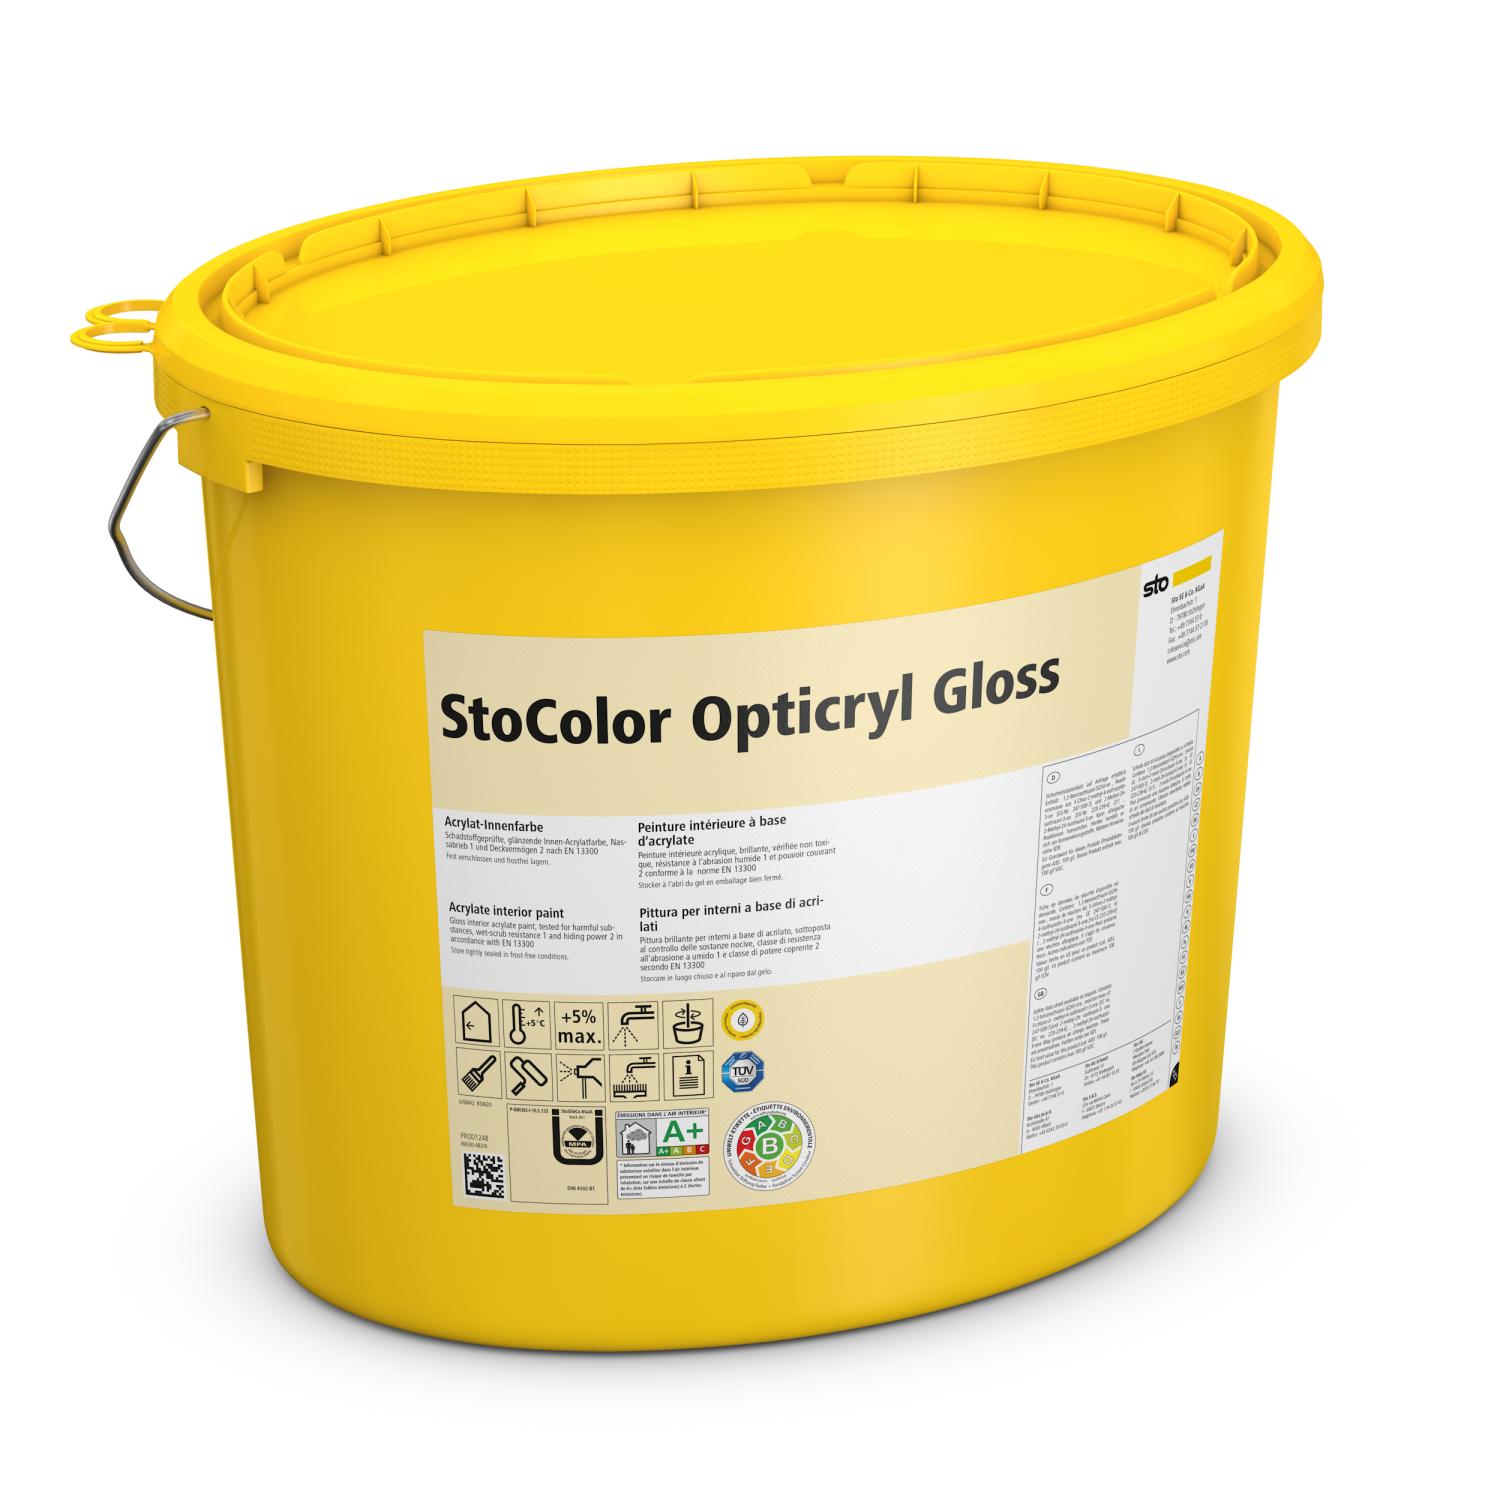 StoColor Opticryl Gloss